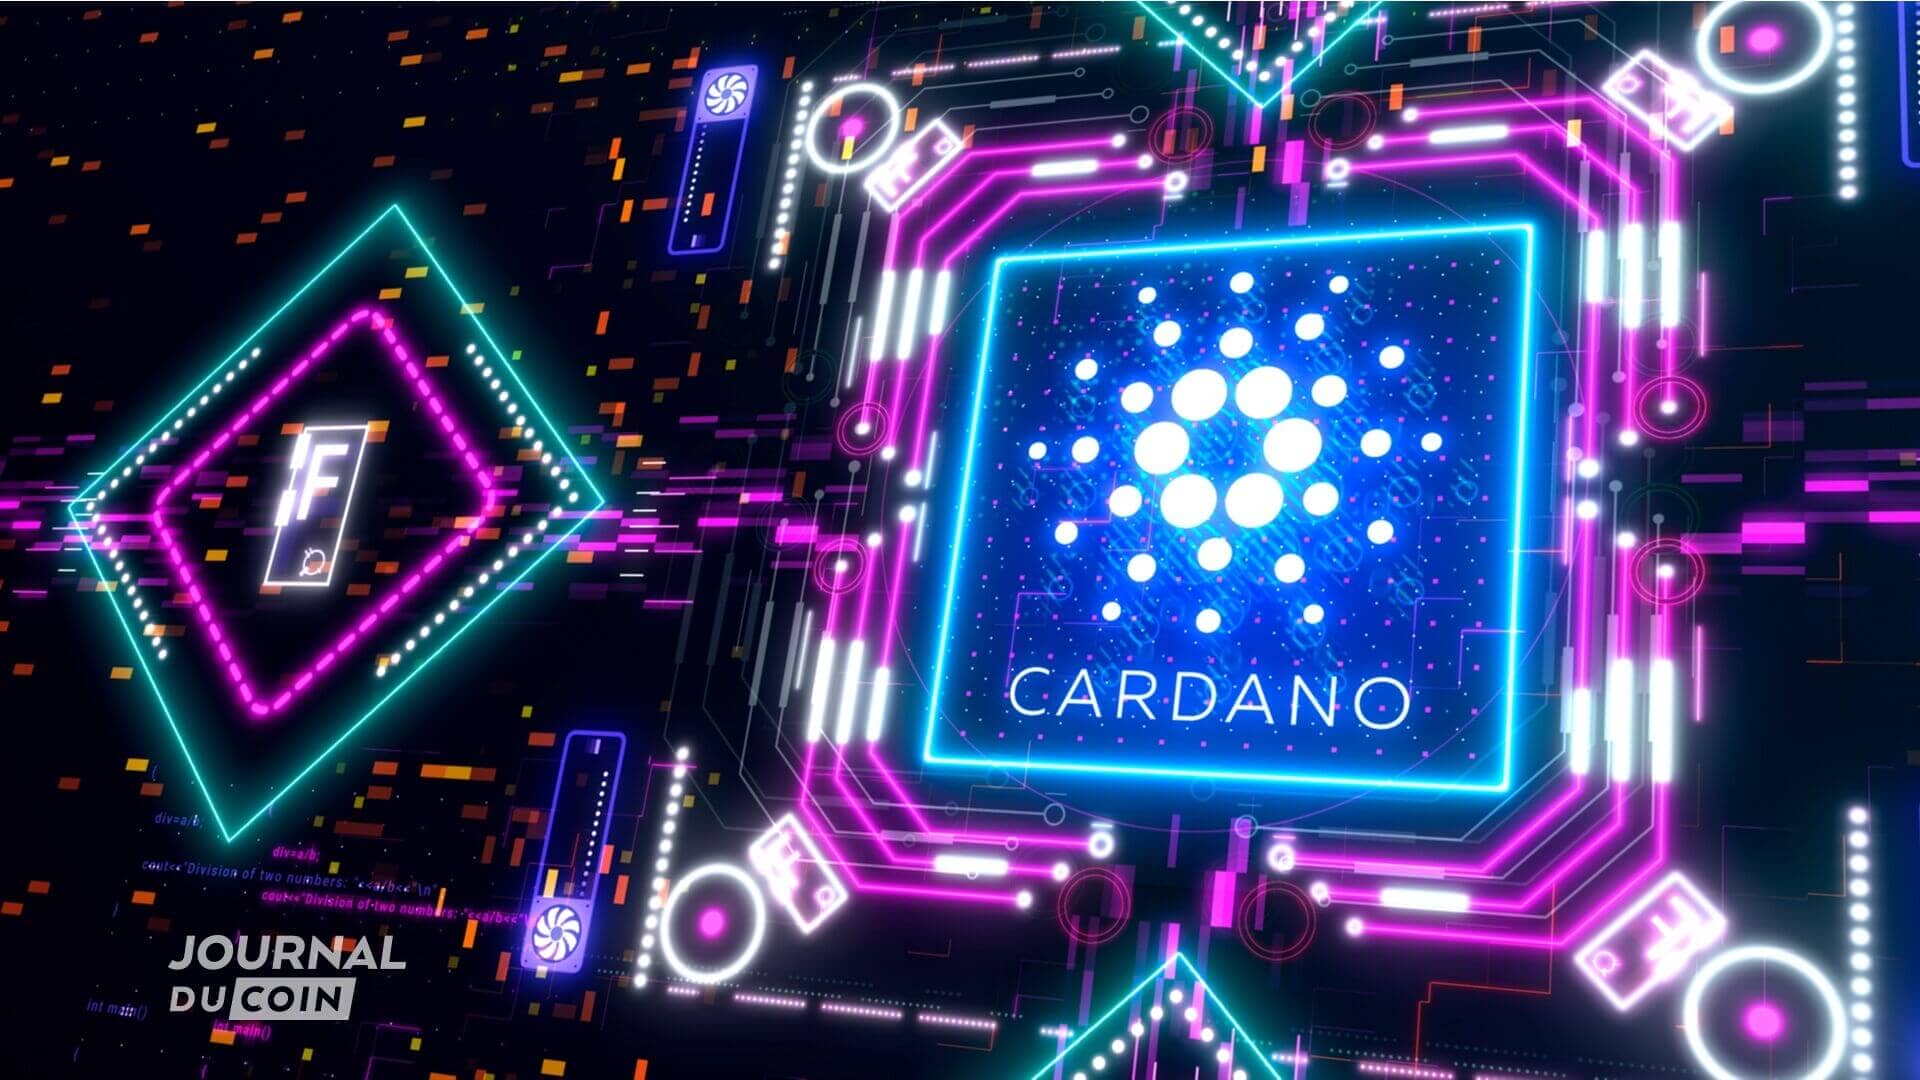 Cardano (ADA) s'associe à Chainlink pour utiliser dans leurs smart contracts les données fournies en temps réel par l’oracle de Chainlink